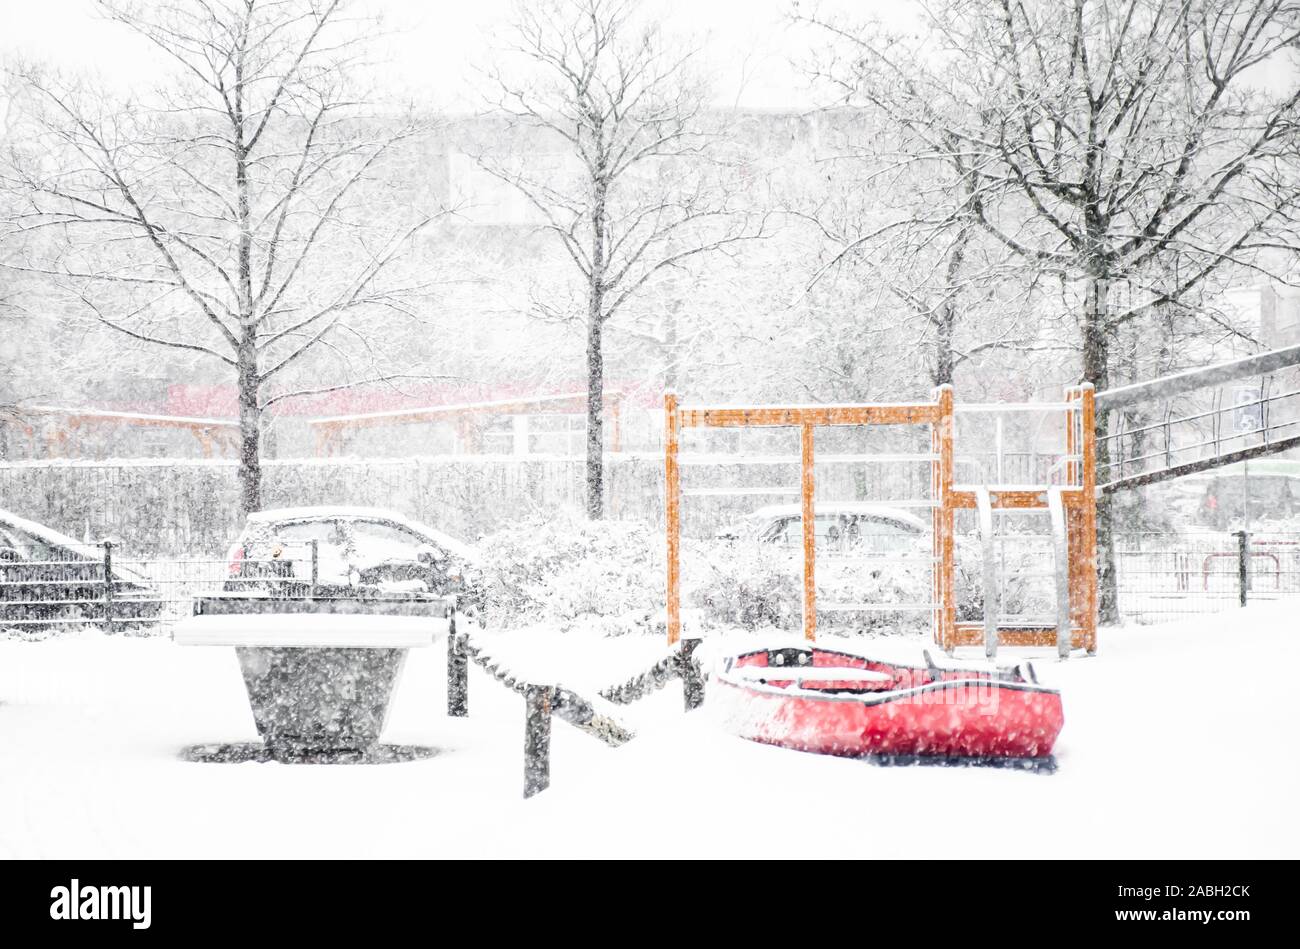 Terrain de jeu pour enfants avec un jouet rouge voile dans la neige Banque D'Images